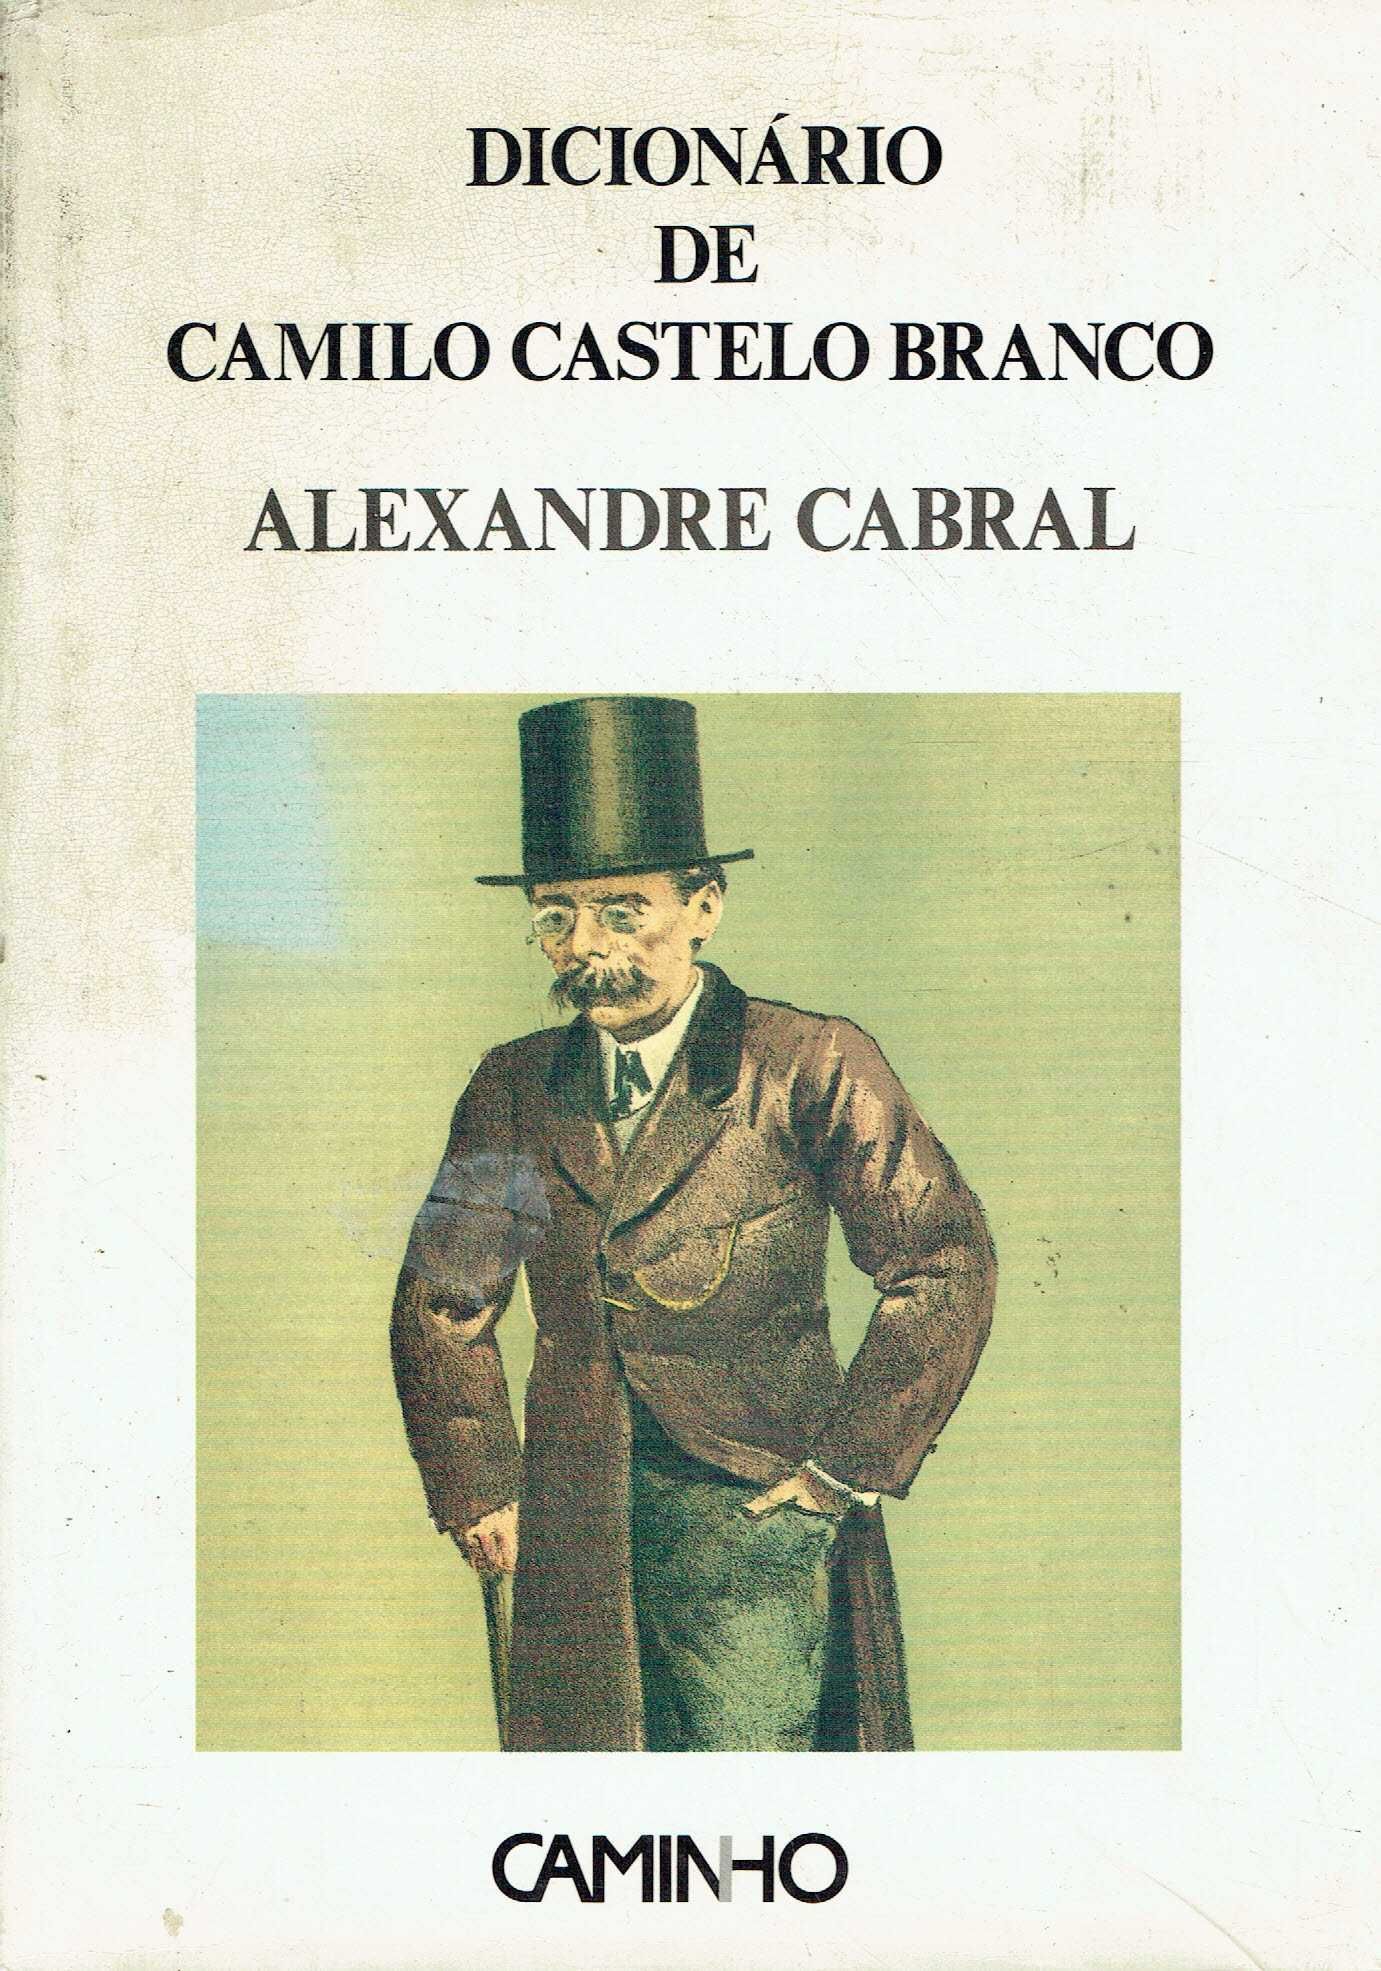 7339

Dicionário de Camilo Castelo Branco
de Alexandre Cabral